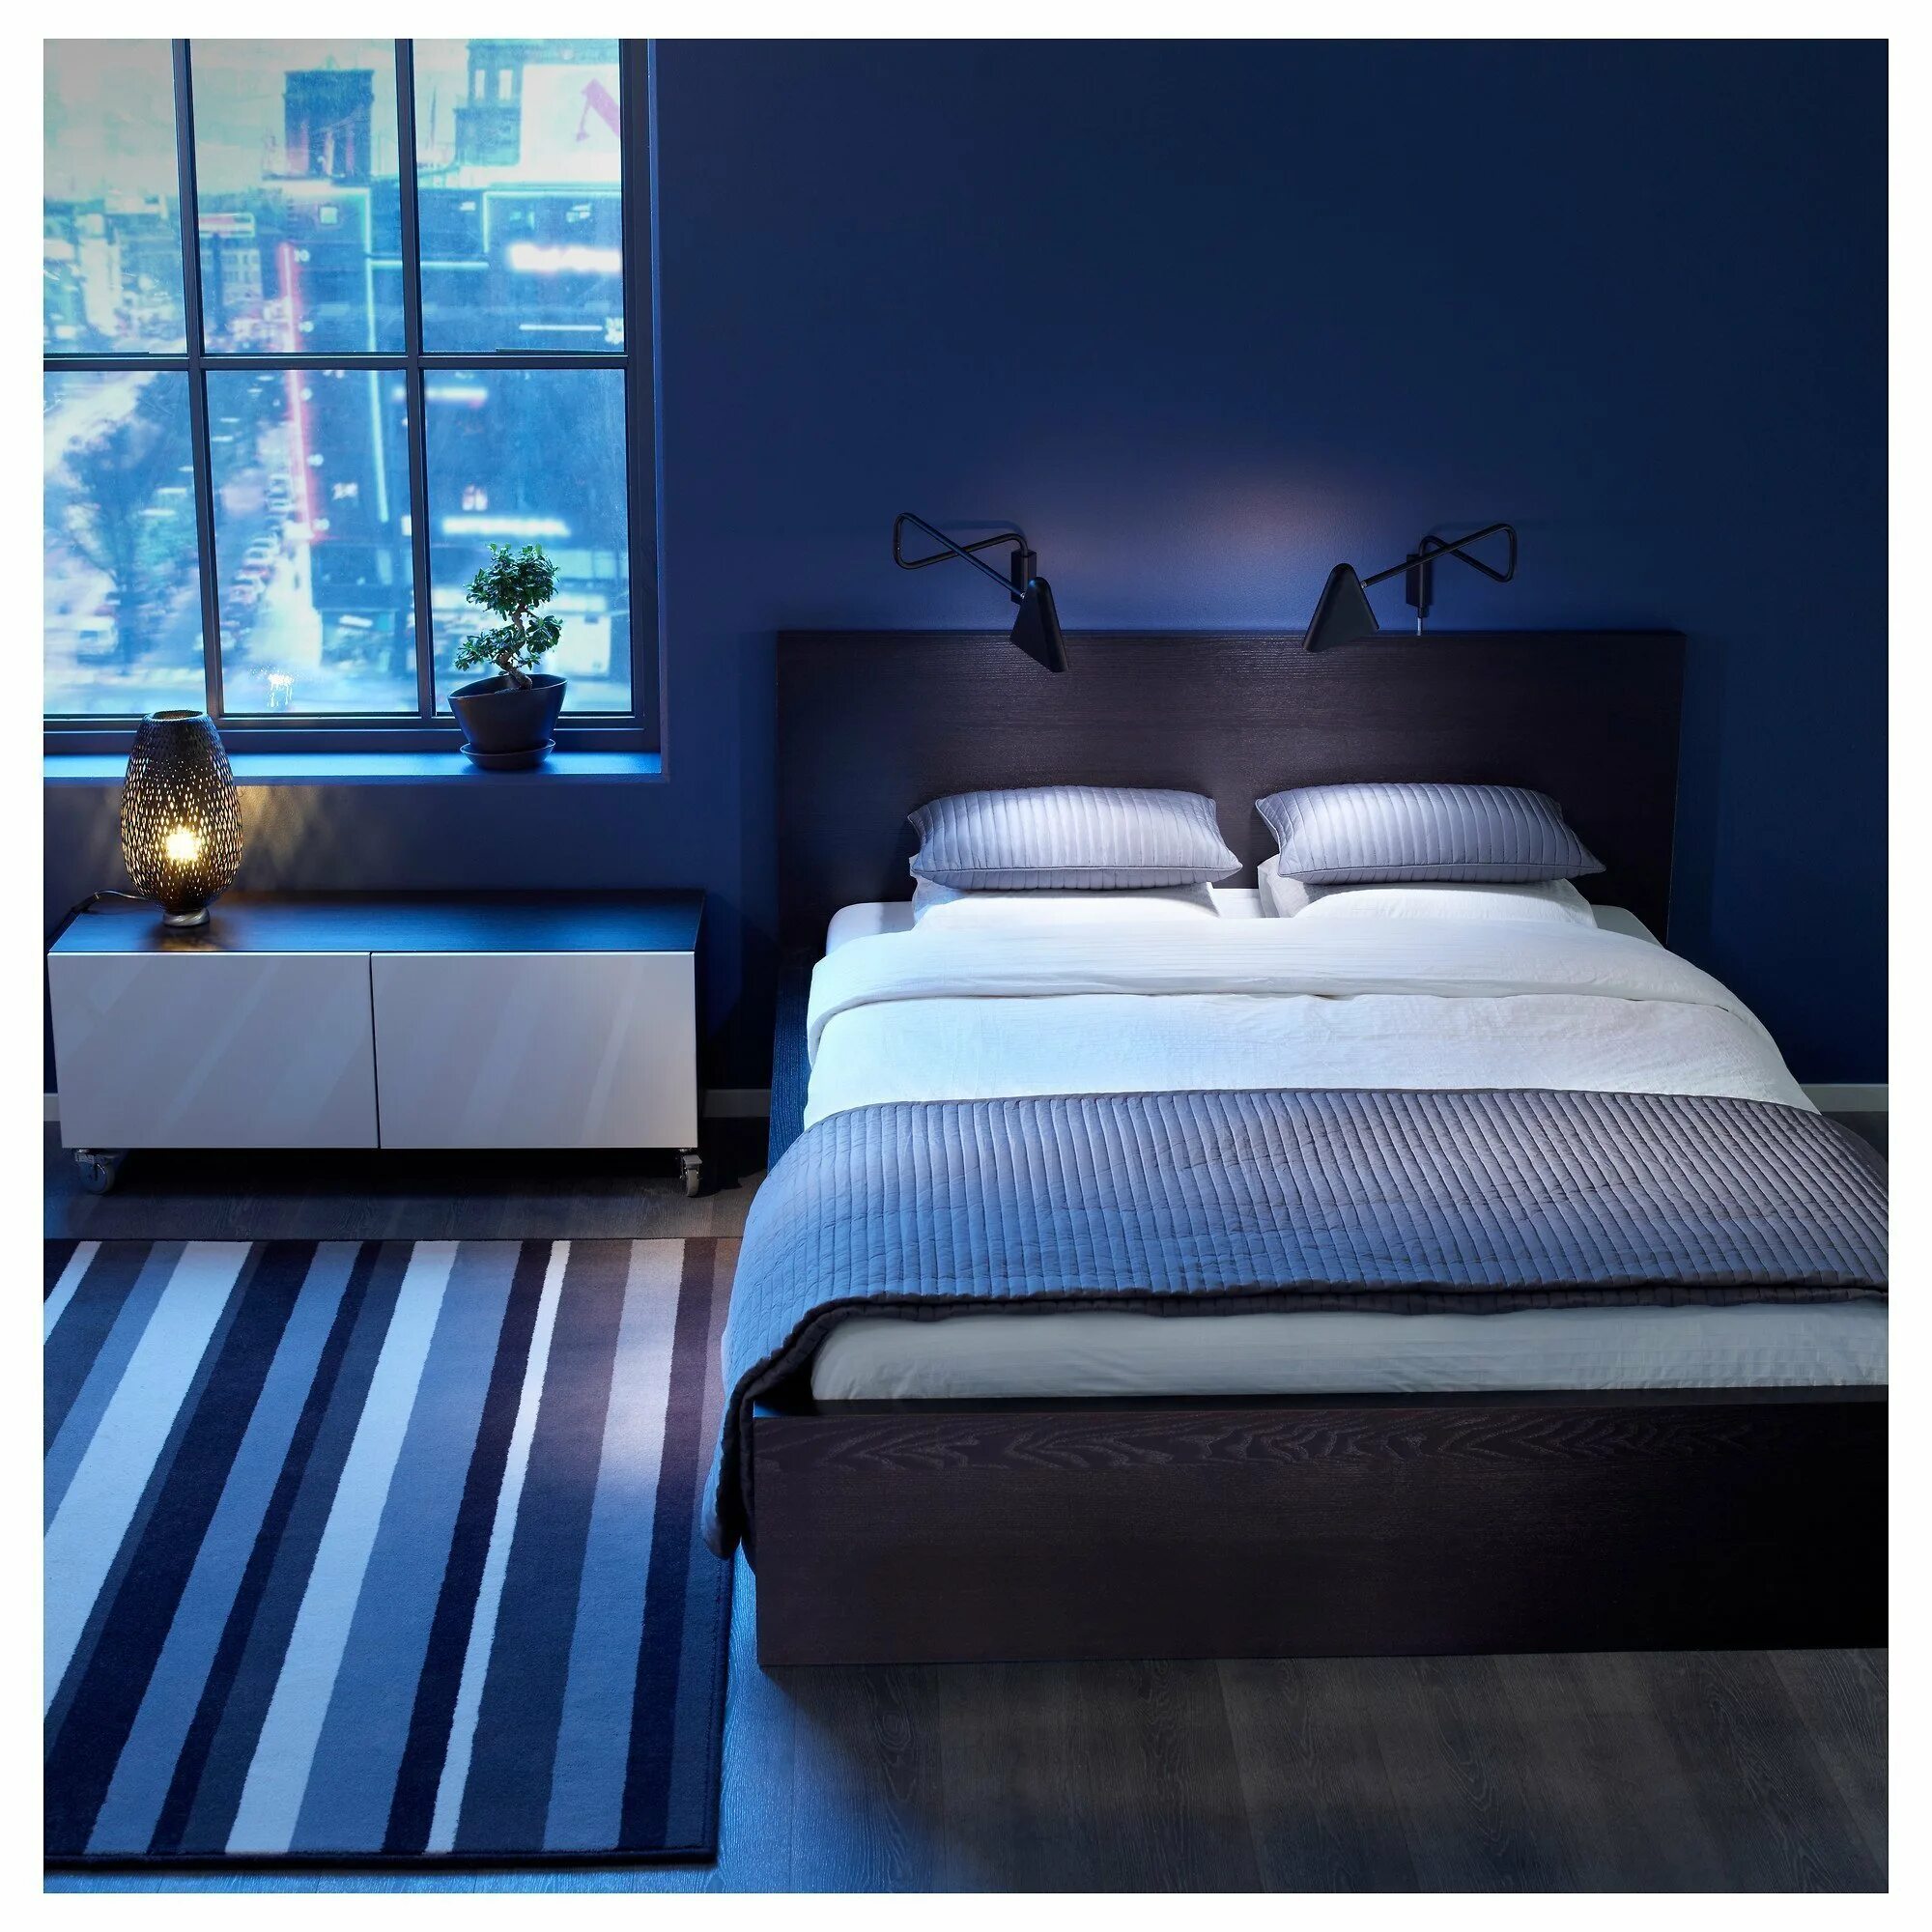 Темная красивая комната. Спальня в синих тонах. Спальня в синем цвете. Темно синяя спальня. Спальня в зимних тонах.